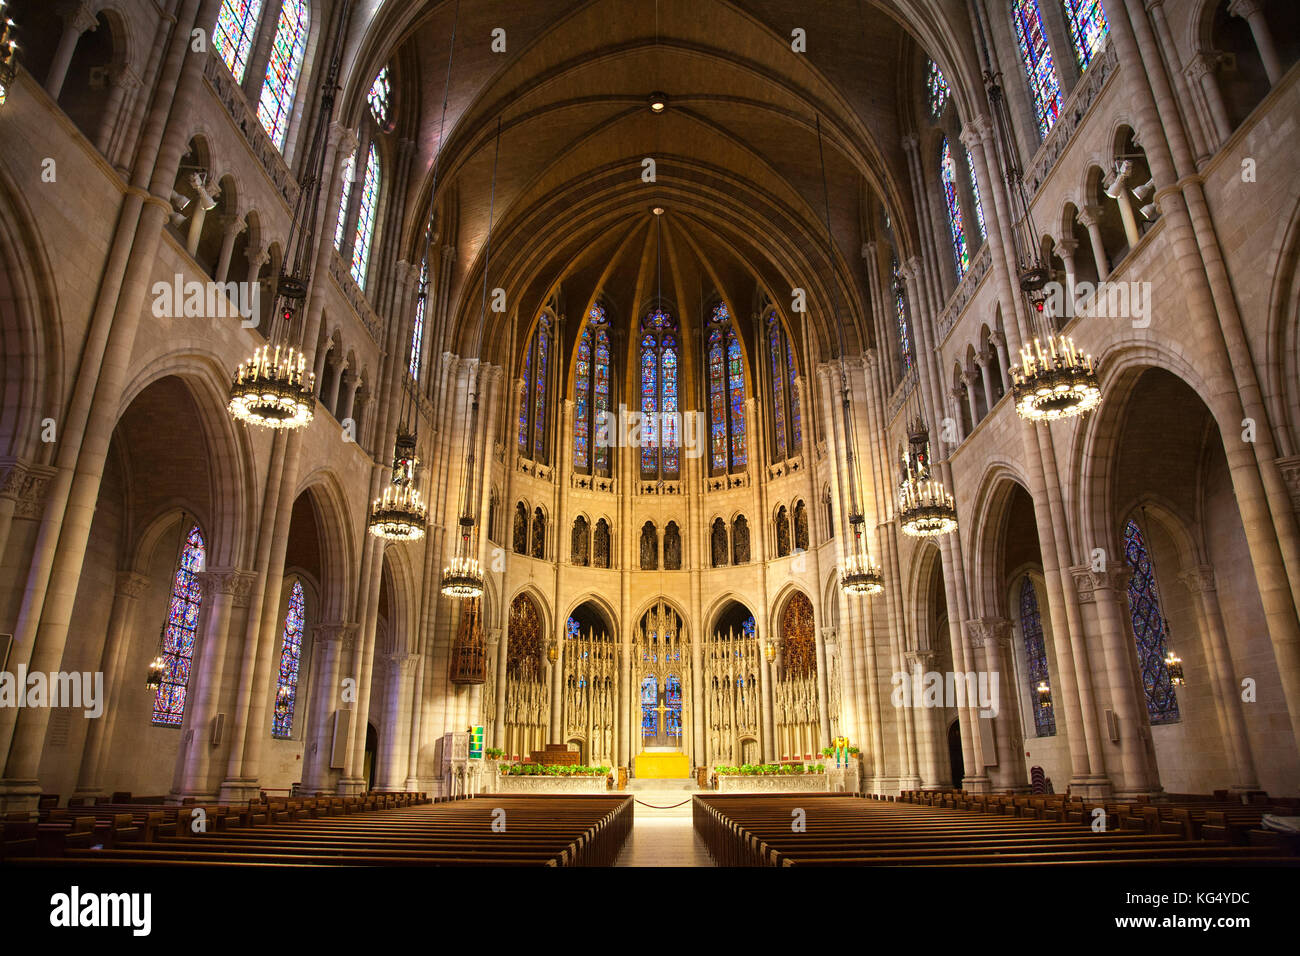 Une partie de l'intérieur de la cathédrale de St John the Divine, Manhattan, New York, USA, Amérique Latine Banque D'Images